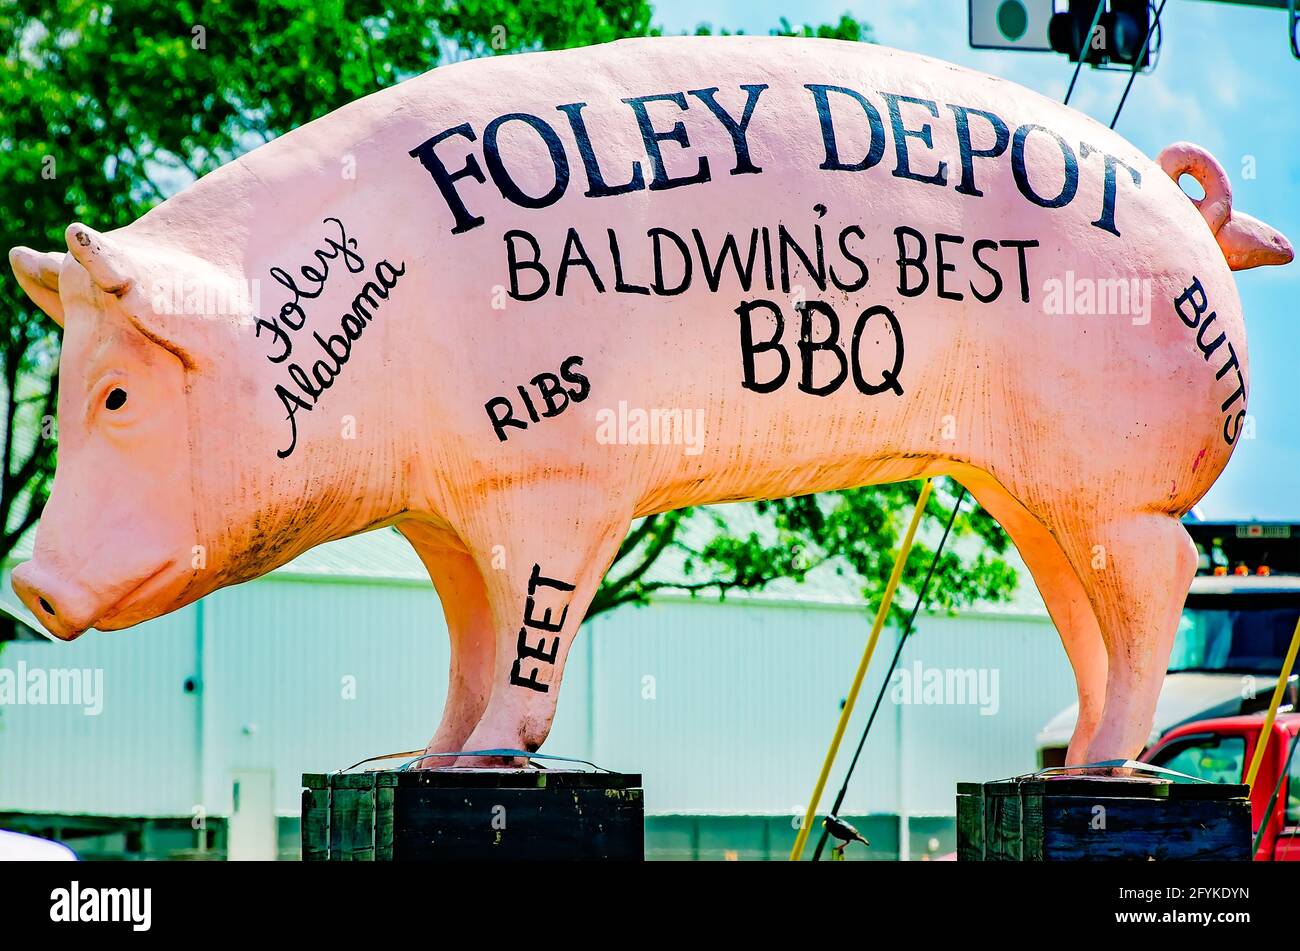 Una statua di maiale rosa pubblicizza il barbecue in stile Carolina al distributore di benzina Foley Depot, 27 maggio 2021, a Foley, Alabama. Foto Stock